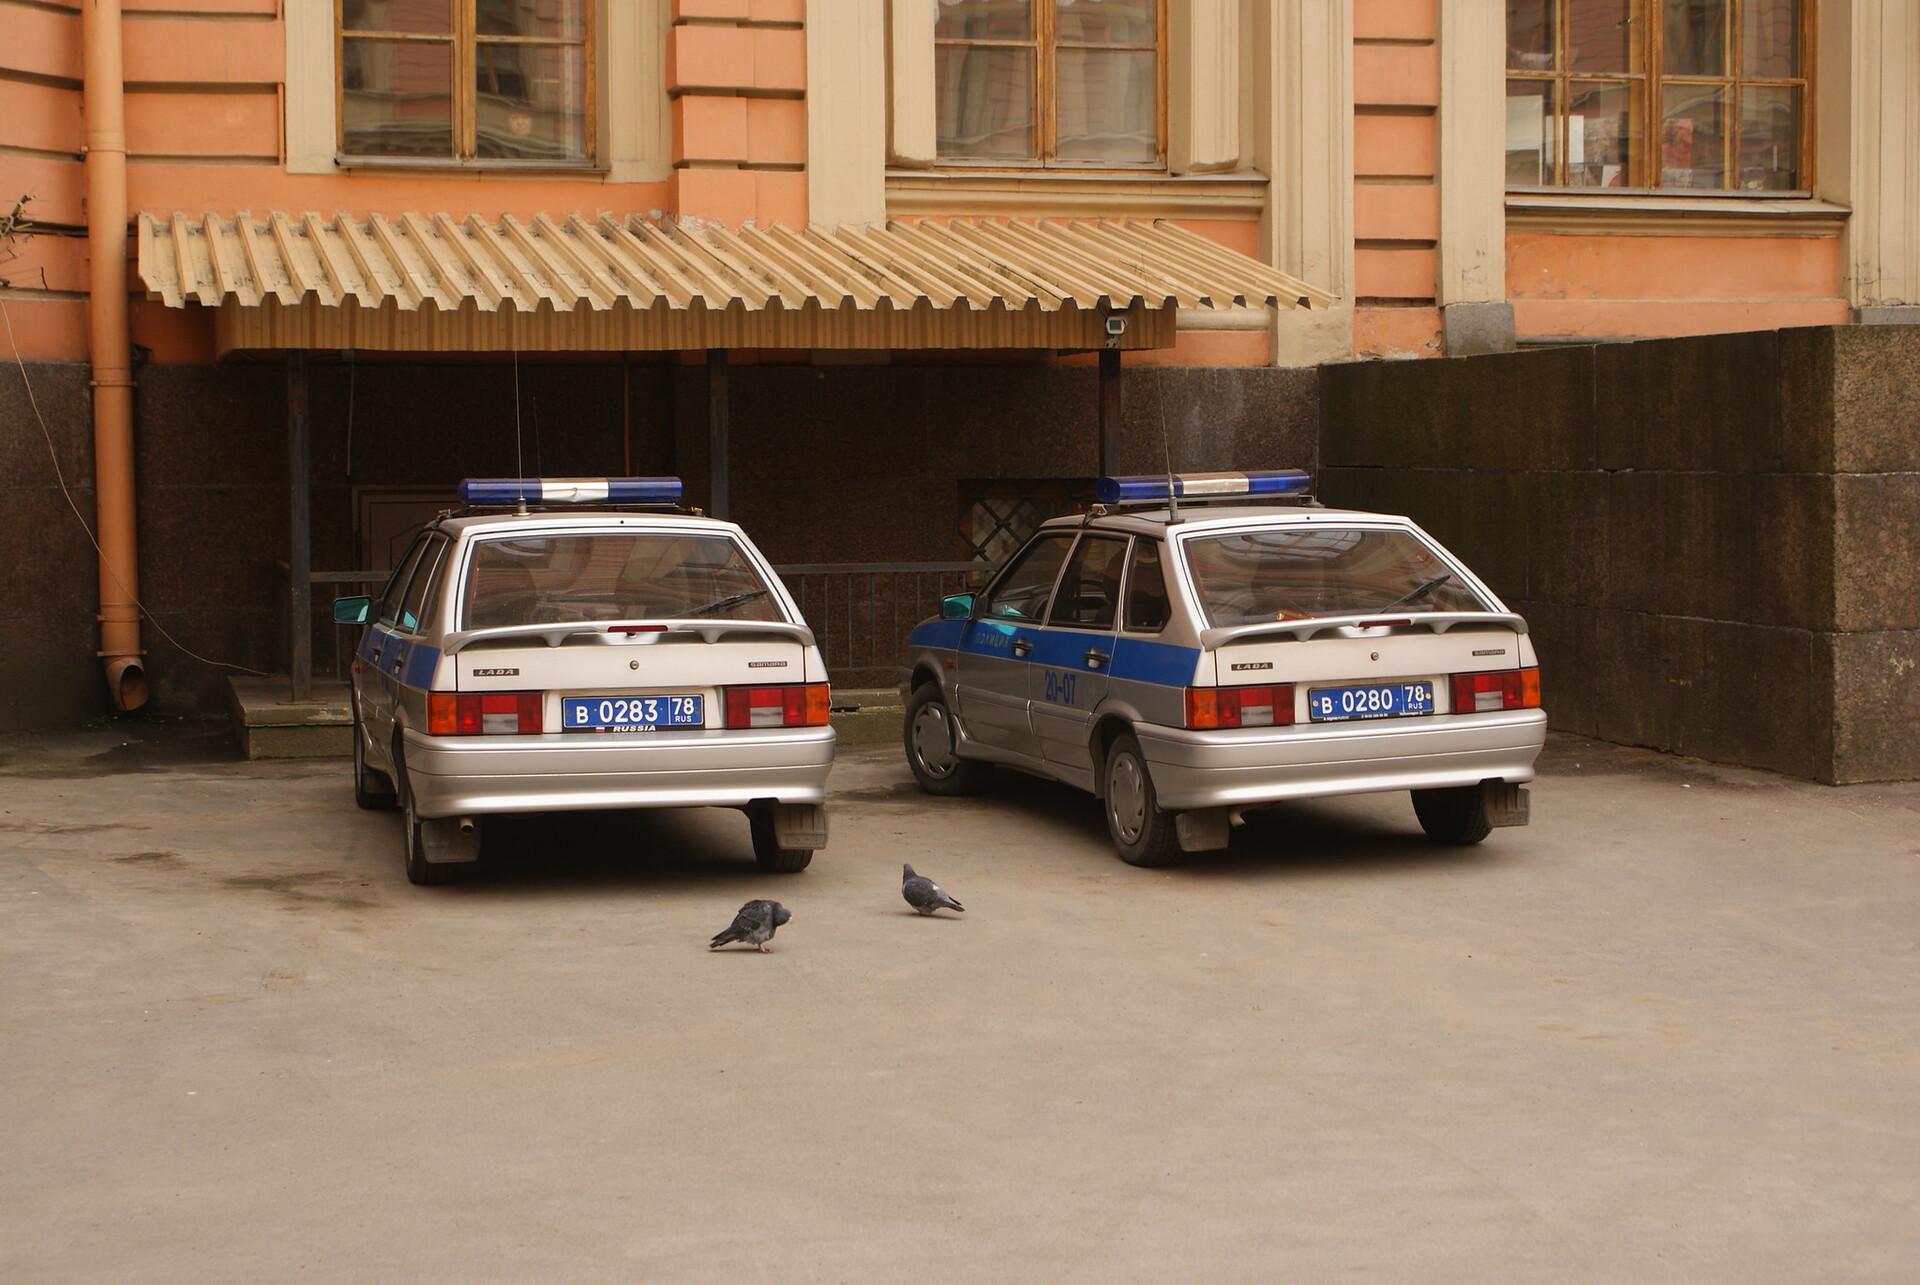 Во время обстрела поста ДПС в Ингушетии пострадал один полицейский